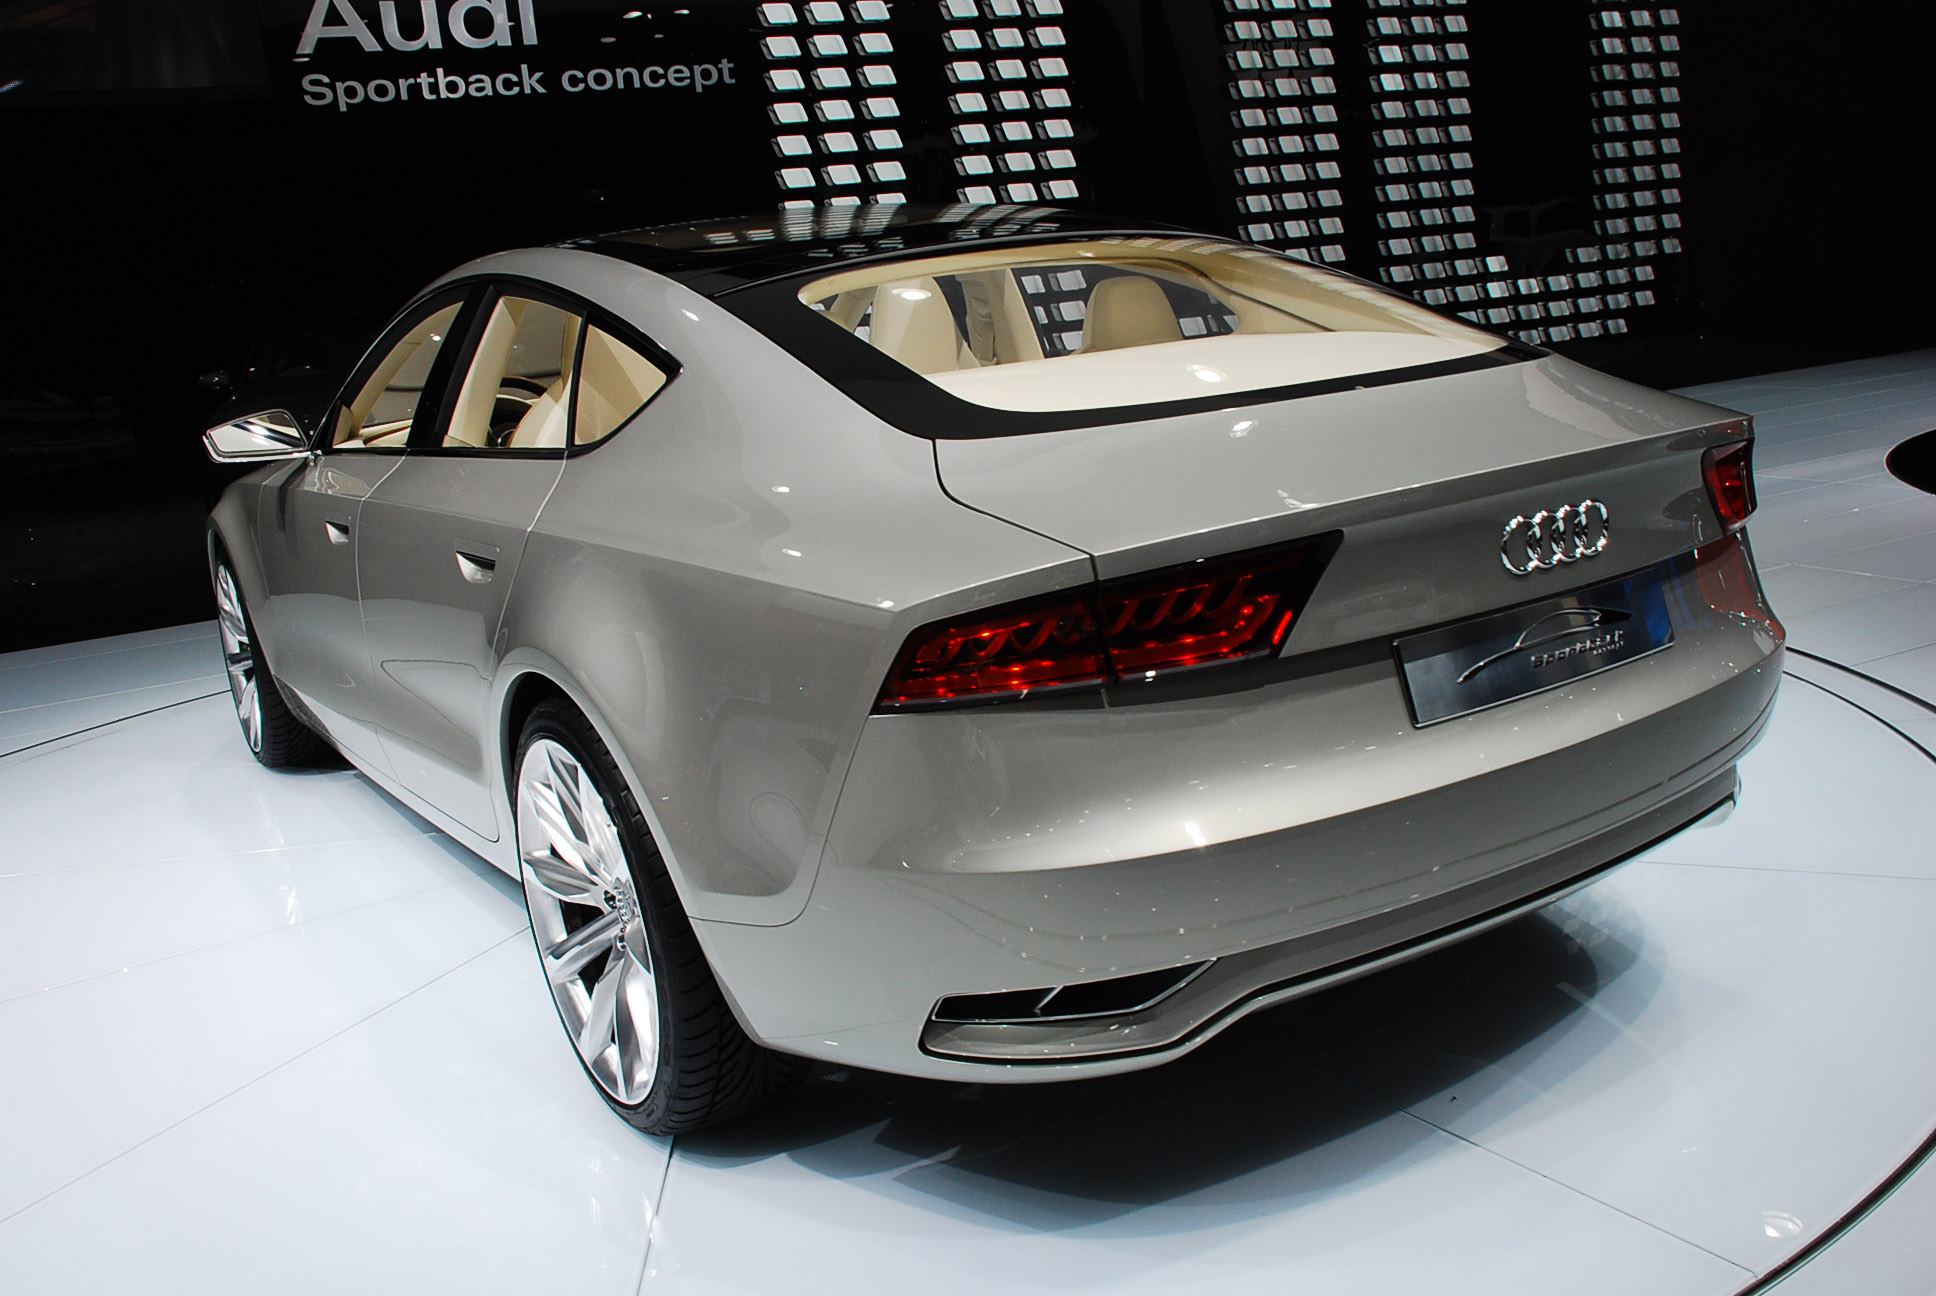 Audi Sportback Concept Detroit